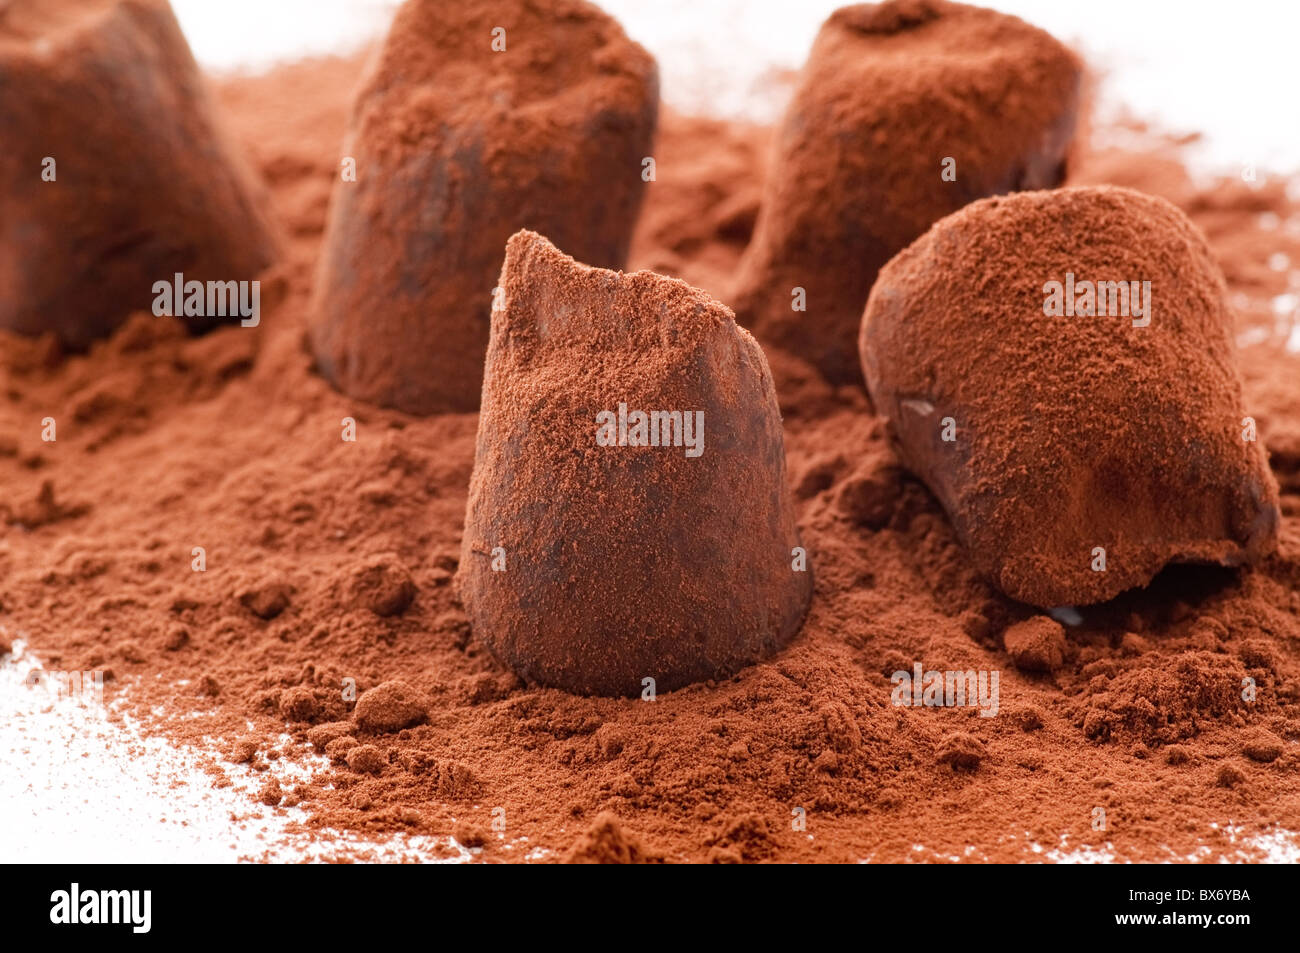 Süße Schokolade Trüffel mit Kakaopulver als Closeup auf weißem Hintergrund Stockfoto